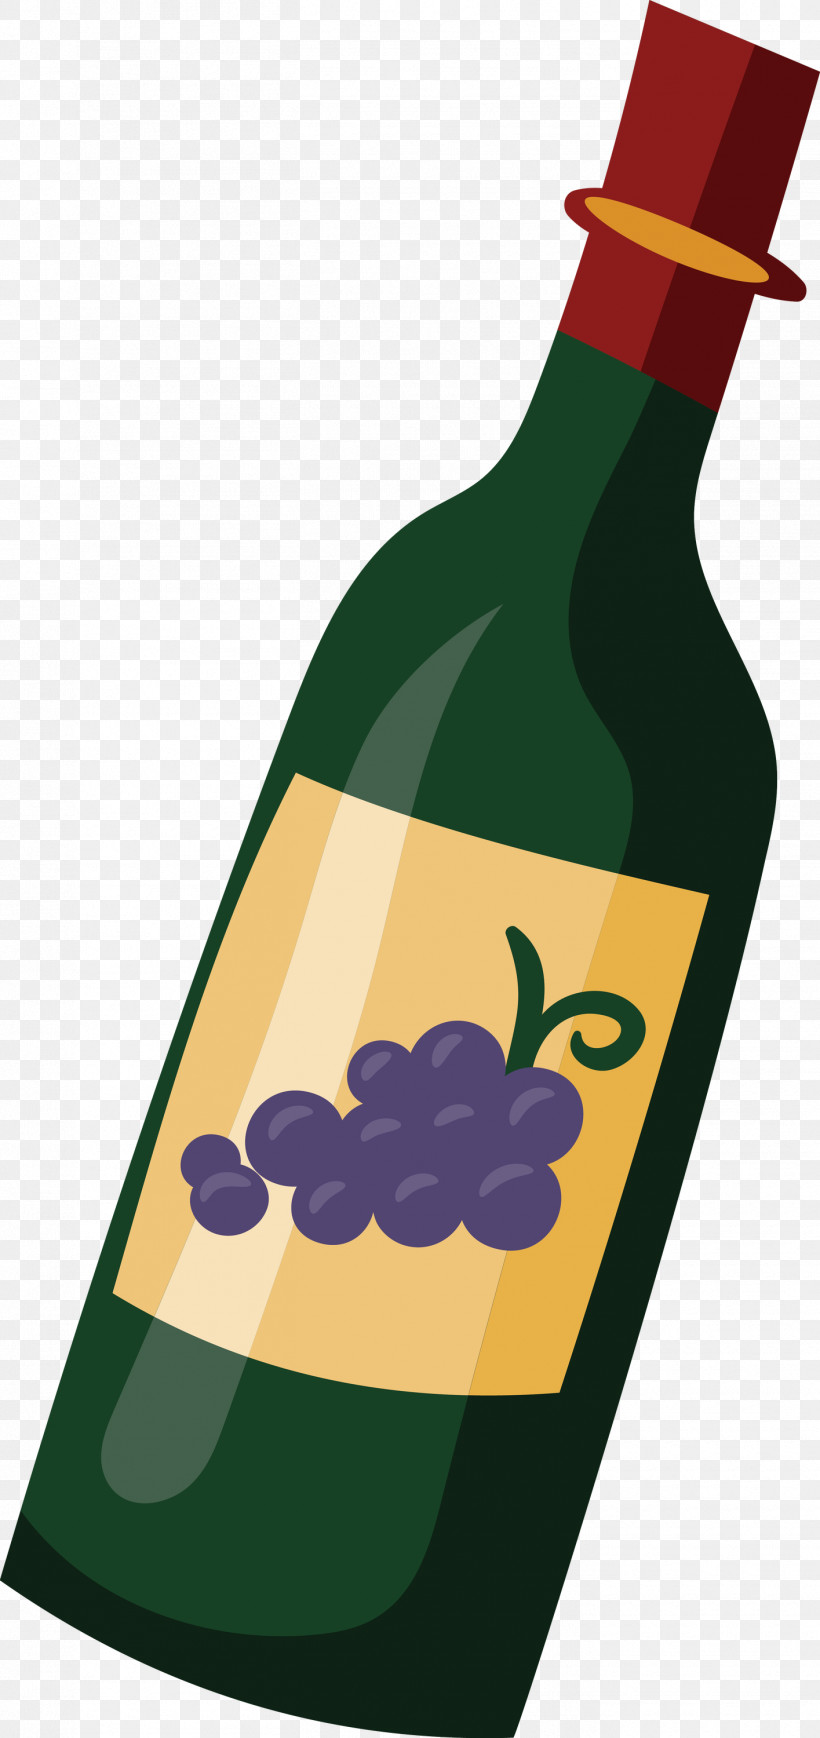 Wine Bottle Glass Bottle Wine Bottle Green, PNG, 1415x3000px, Wine Bottle, Bottle, Glass, Glass Bottle, Green Download Free